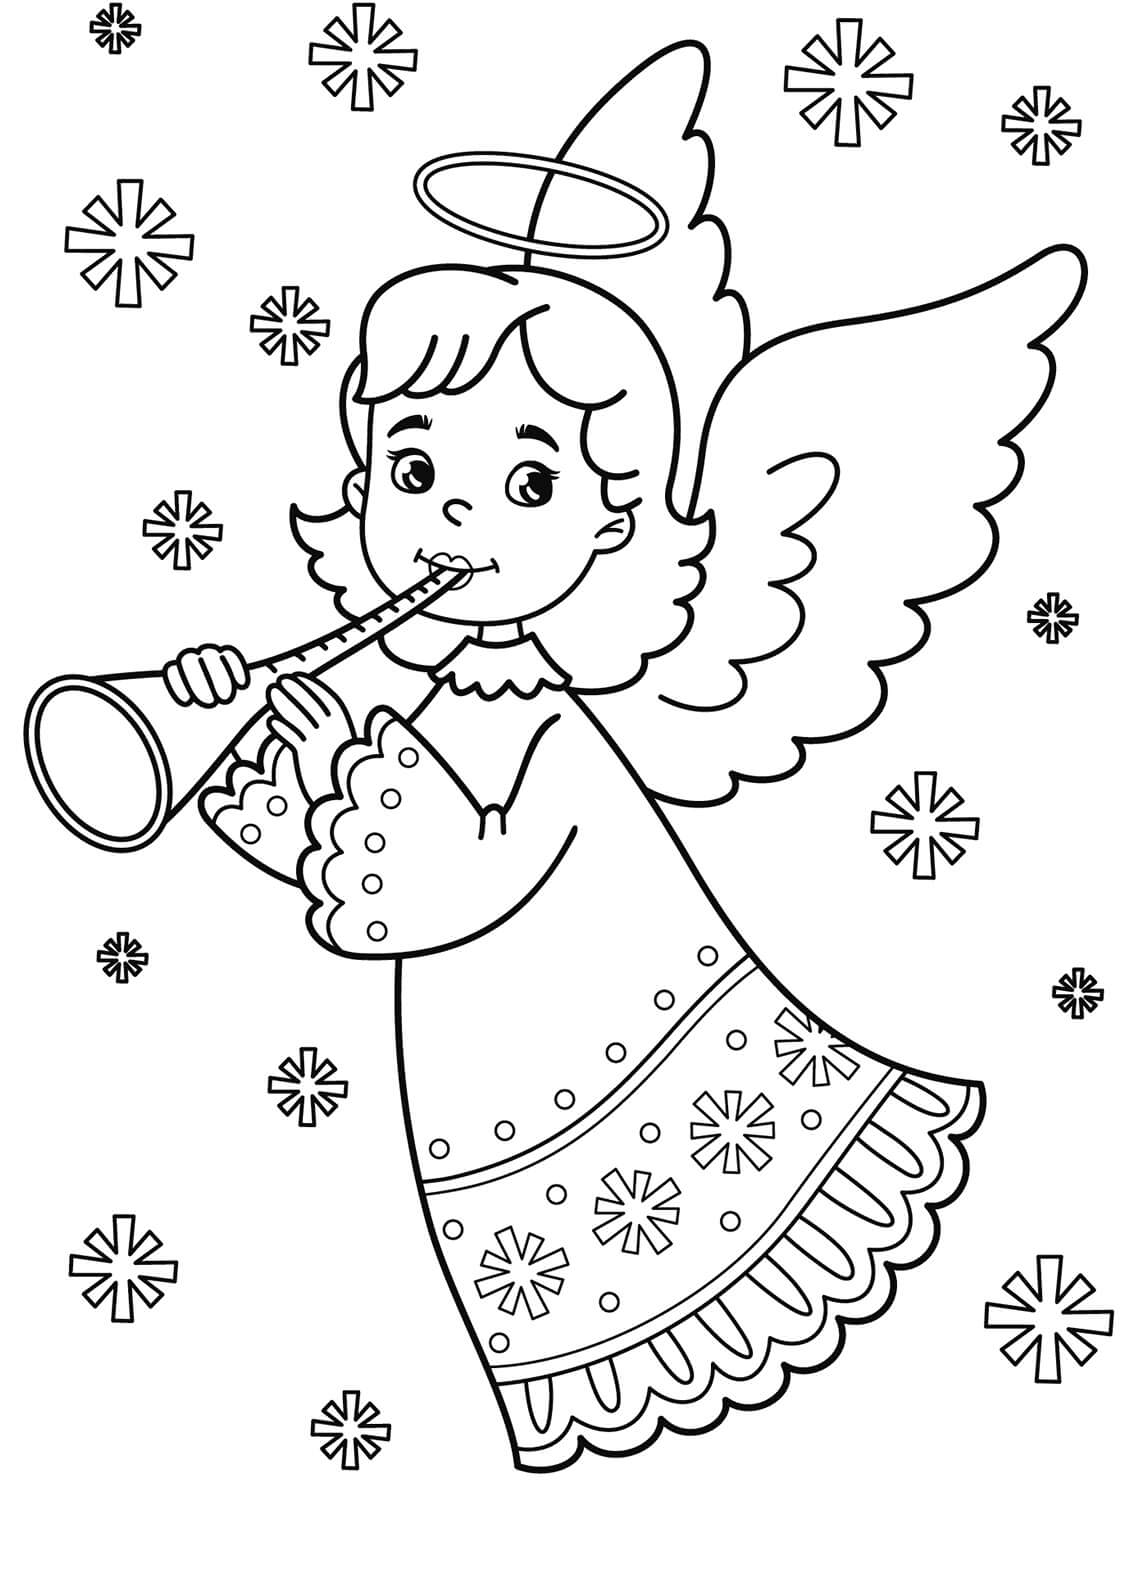 Kleine engel die trompet speelt met sneeuwvlokken